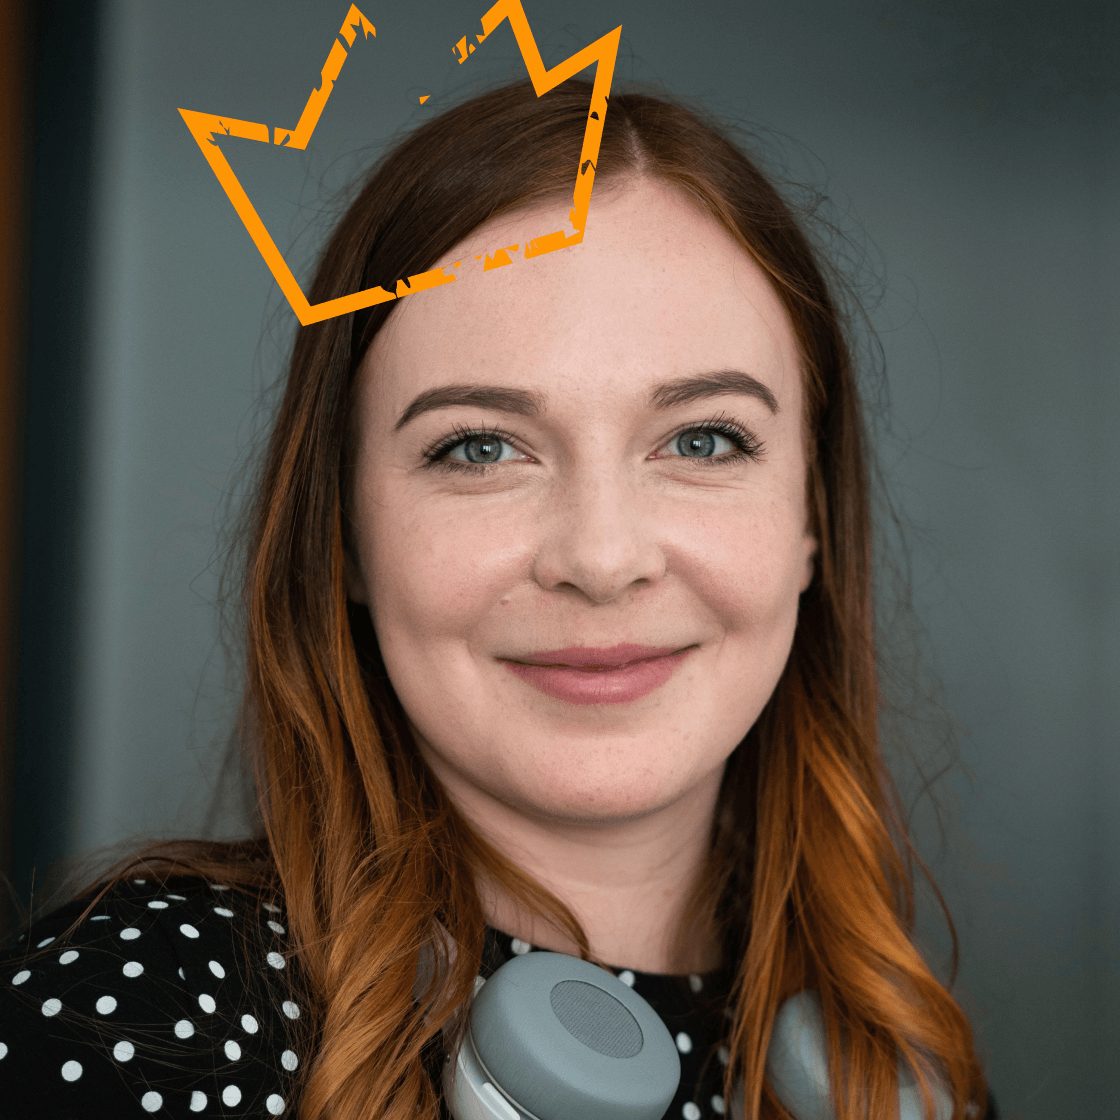 Eine orange illustrierte Krone leuchtet auf dem Kopf von Anja D.